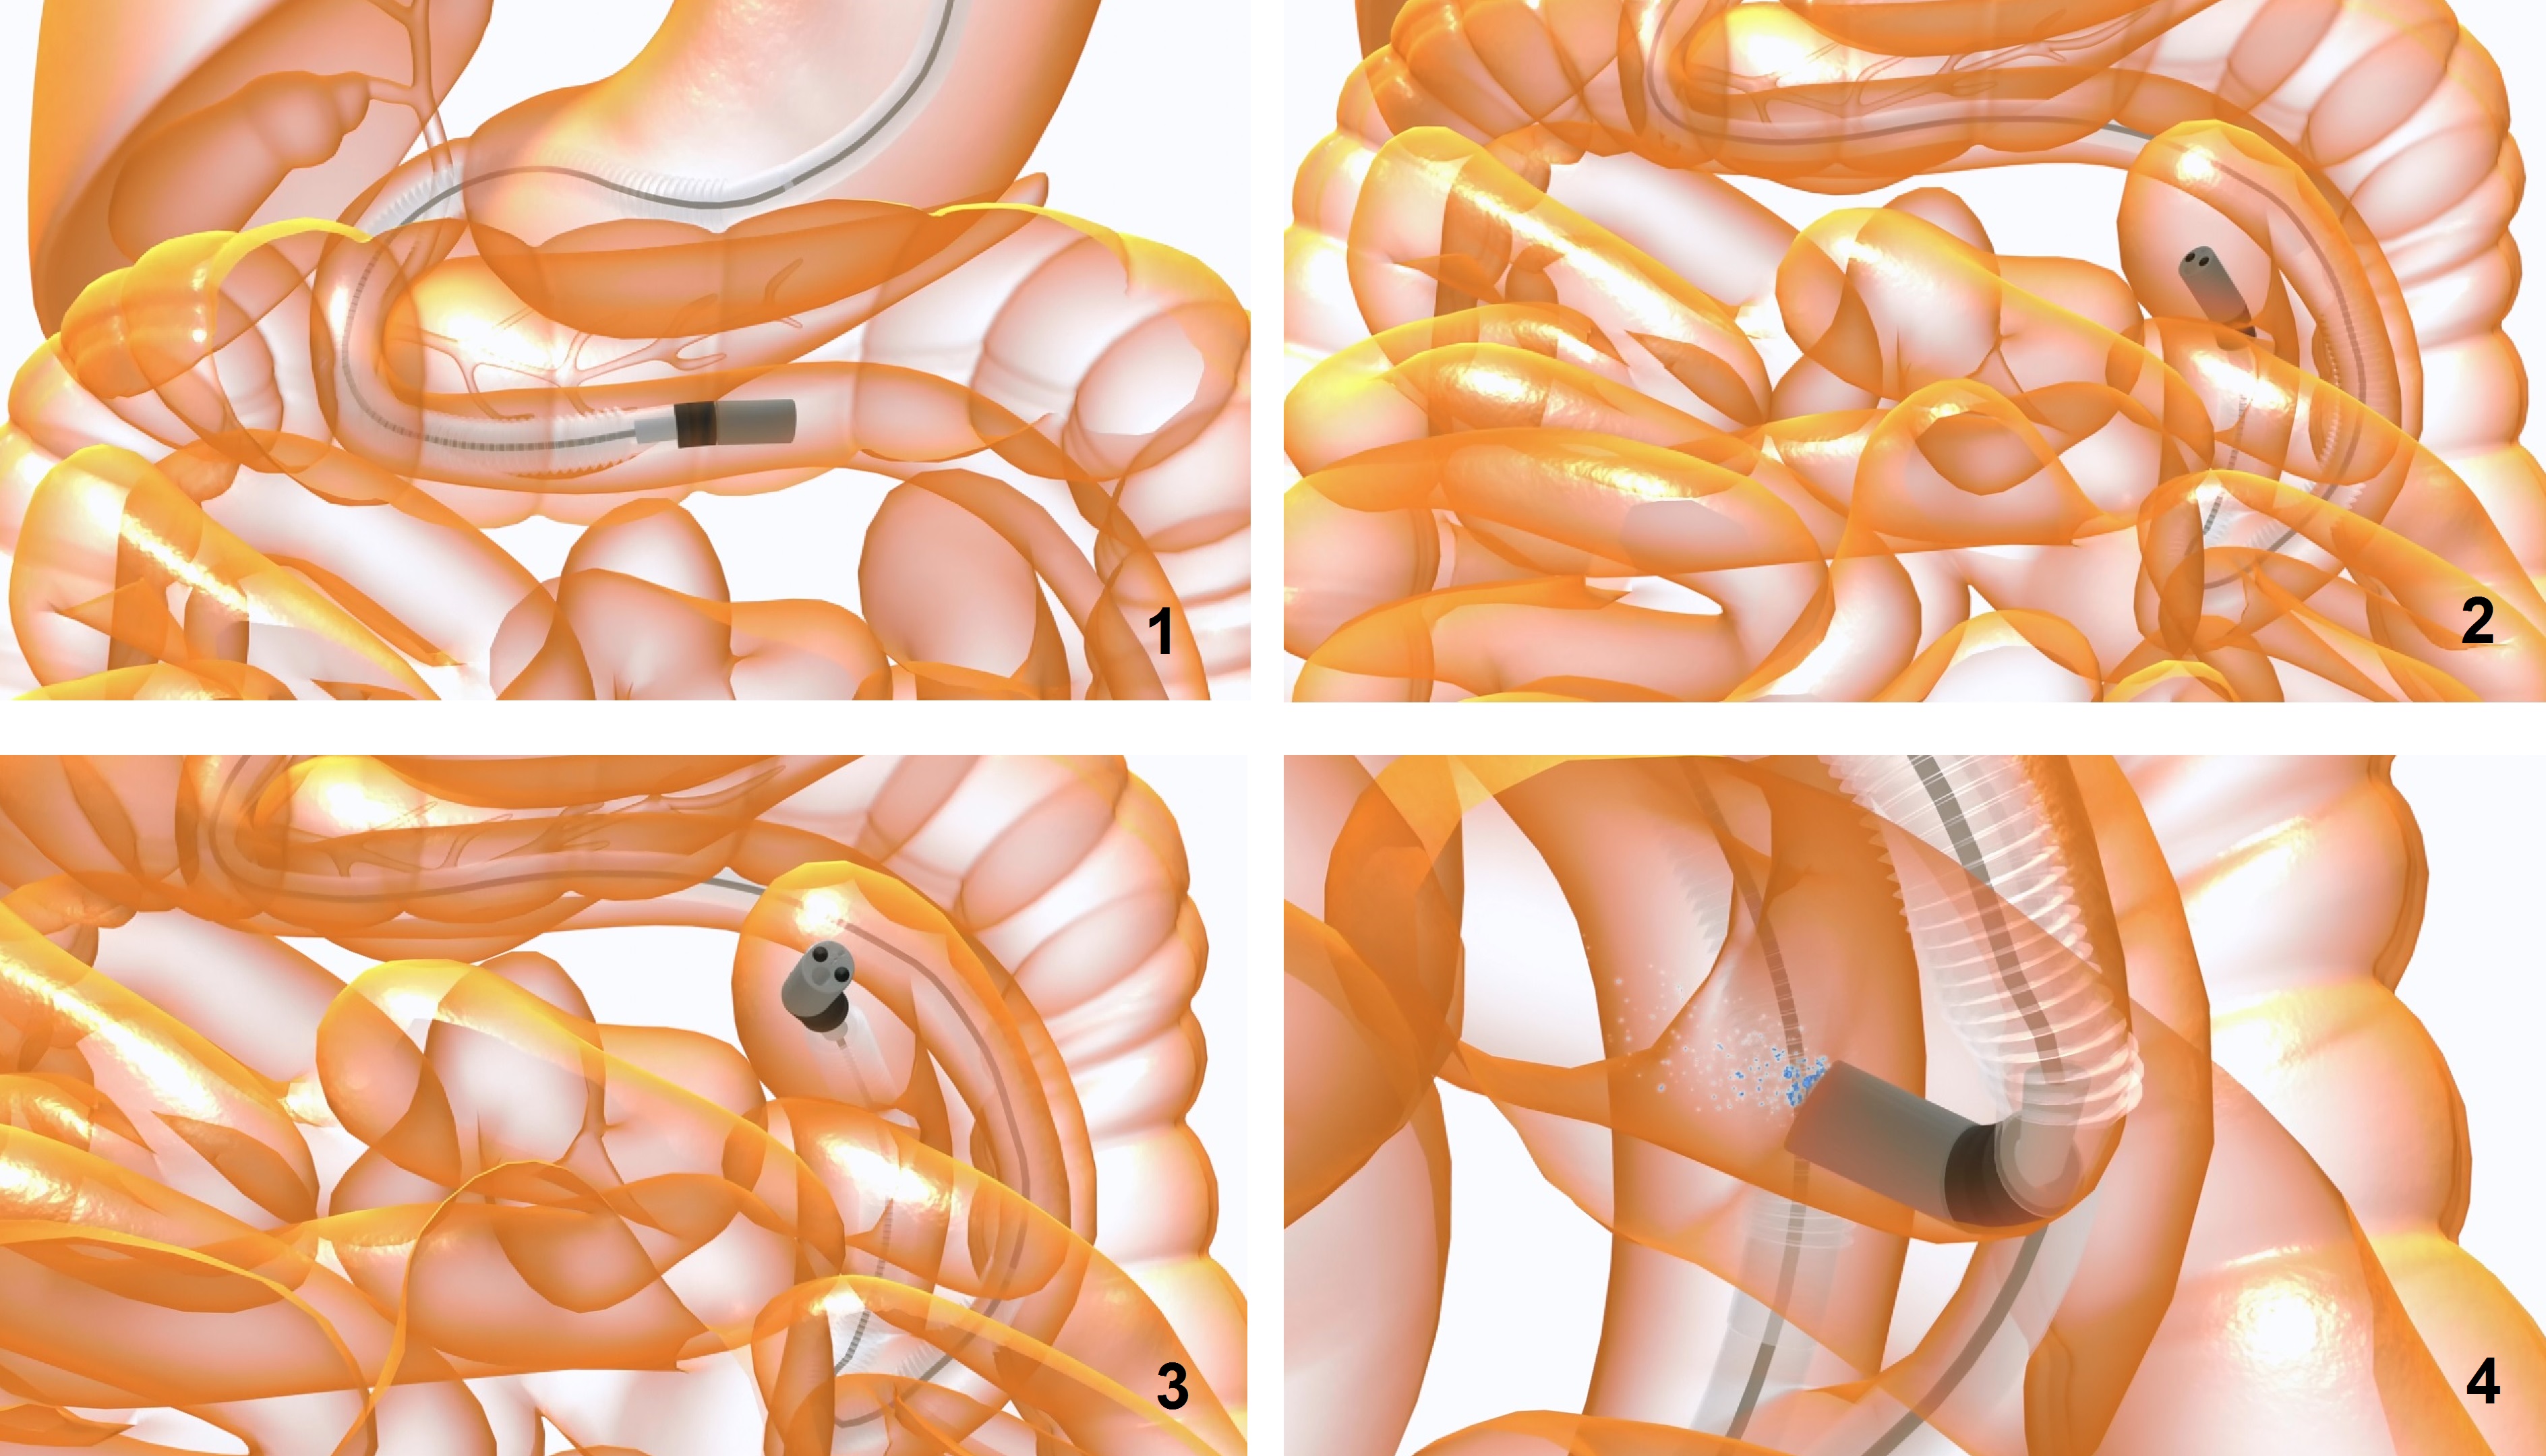 磁力導航內窺鏡在小腸運作的模擬圖。